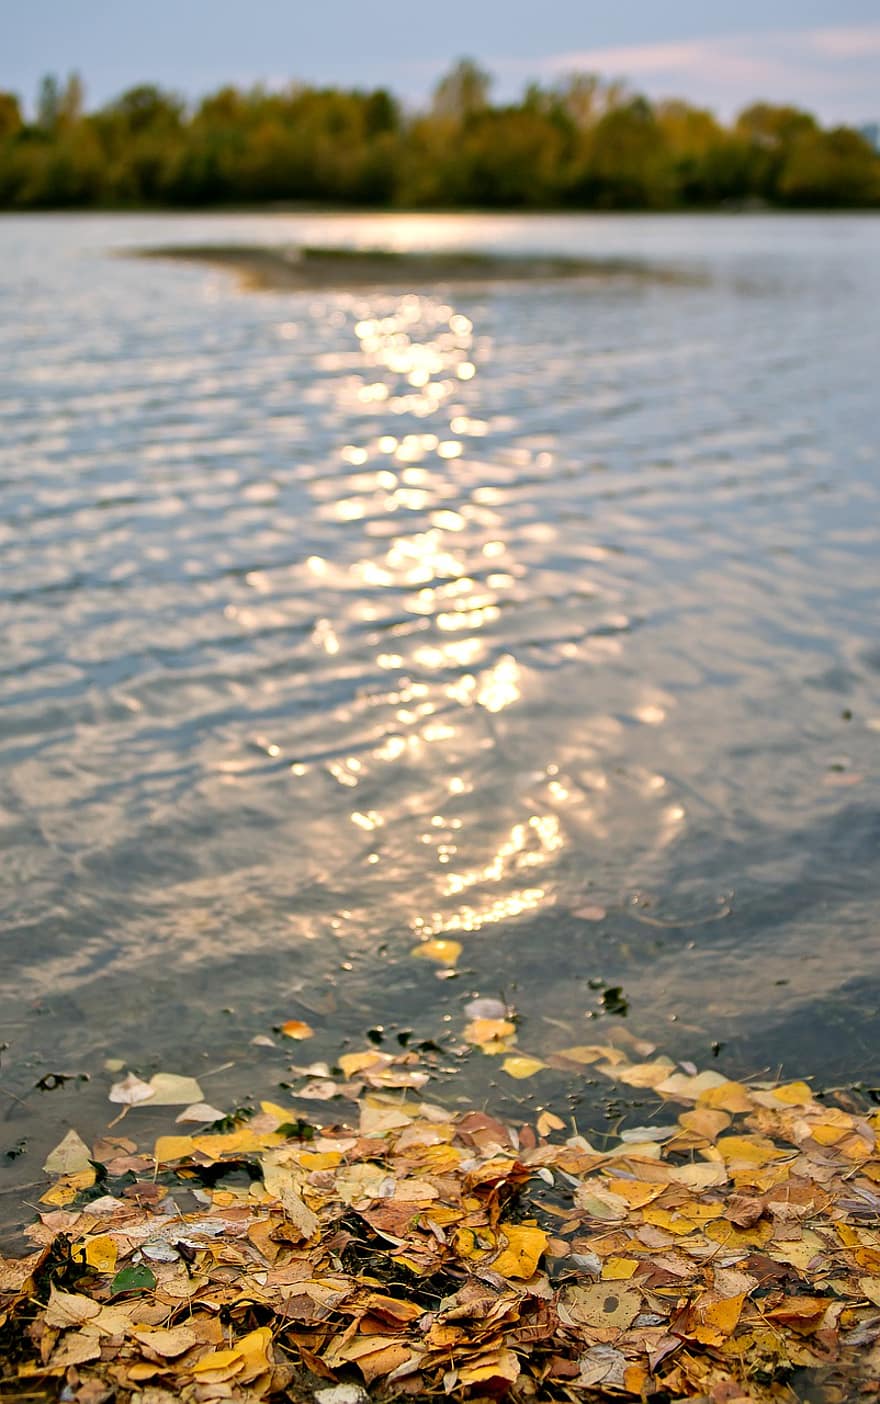 efterår, tørrede blade, flod, natur, sø, morgen, blad, vand, gul, sæson, baggrunde